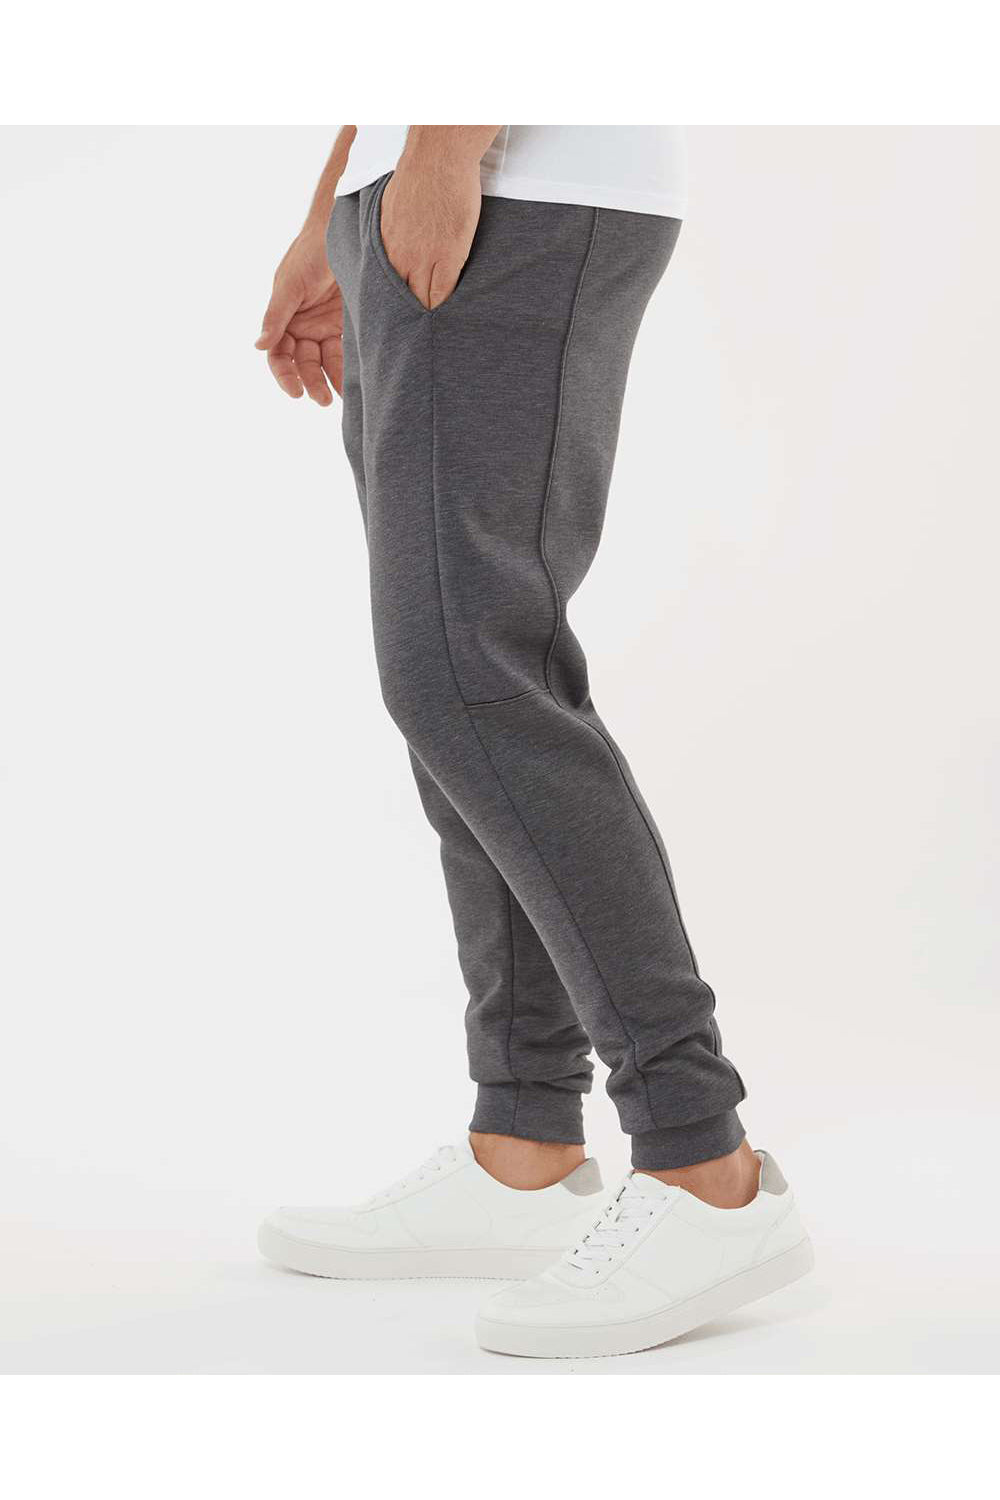 Augusta Sportswear 6868 Mens Eco Revive 3 Season Fleece Jogger Sweatpants w/ Pockets Heather Carbon Grey Model Side